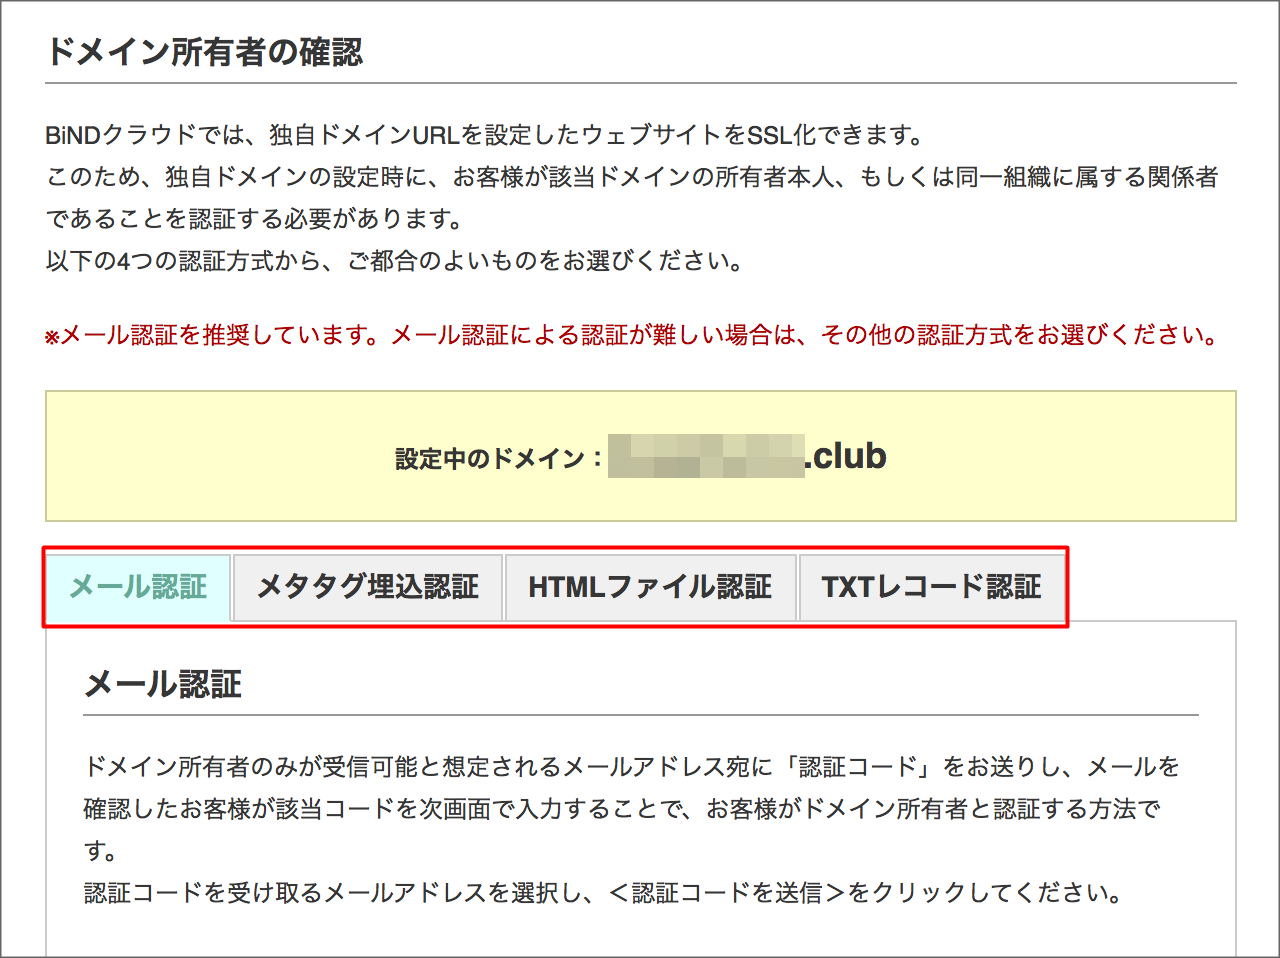 http://www.digitalstage.jp/support/weblife/manual/01-05-02_005.png